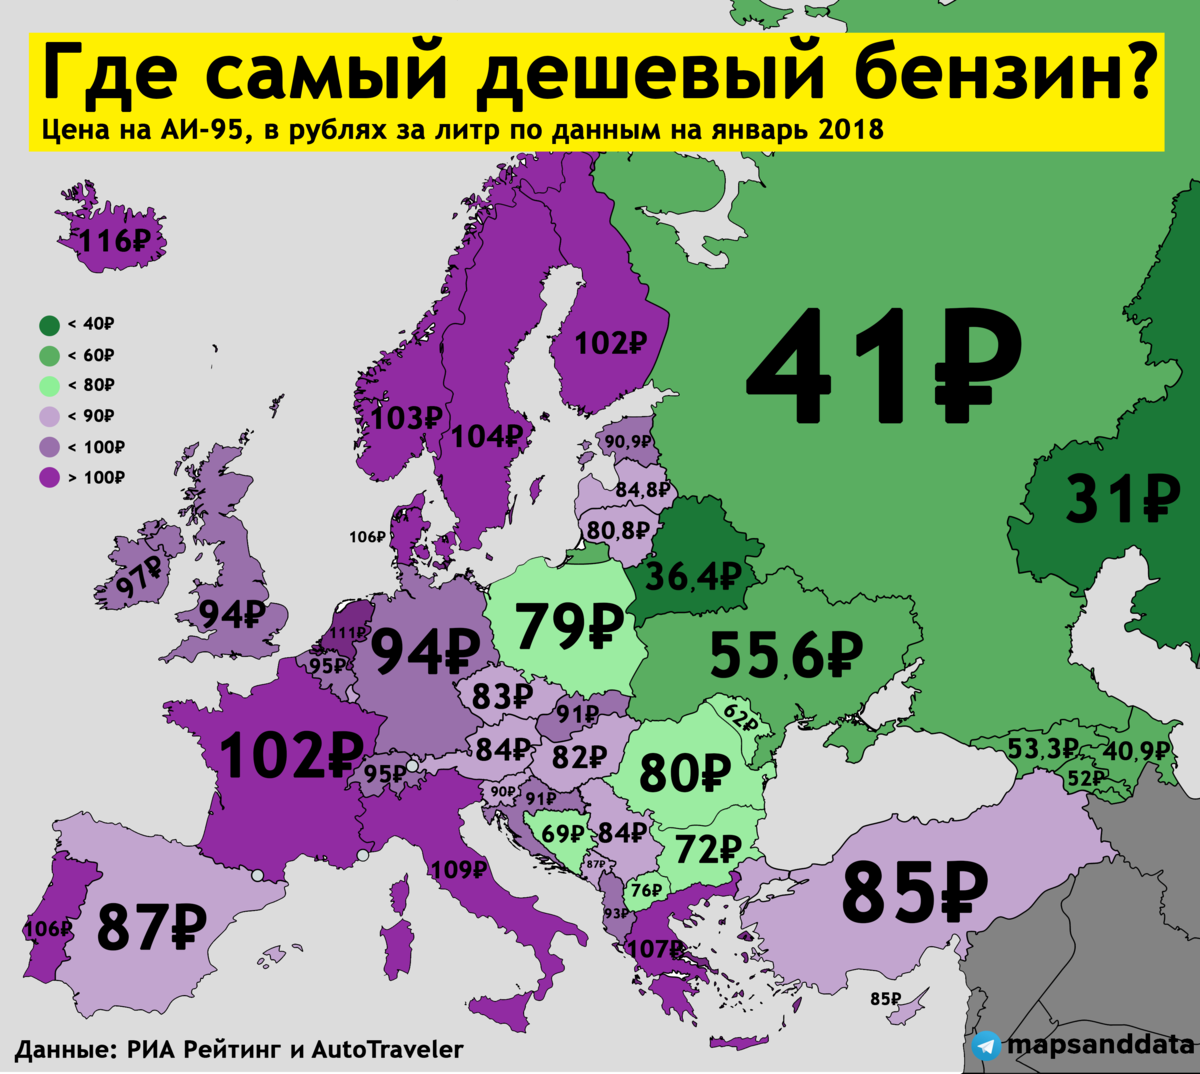 Страны где рубль. Самый дешовый бинзинв мири. Самый дешевый бензин в мине. Самый дешевый бензин в Европе. Самый дешёвый бензин в мире.